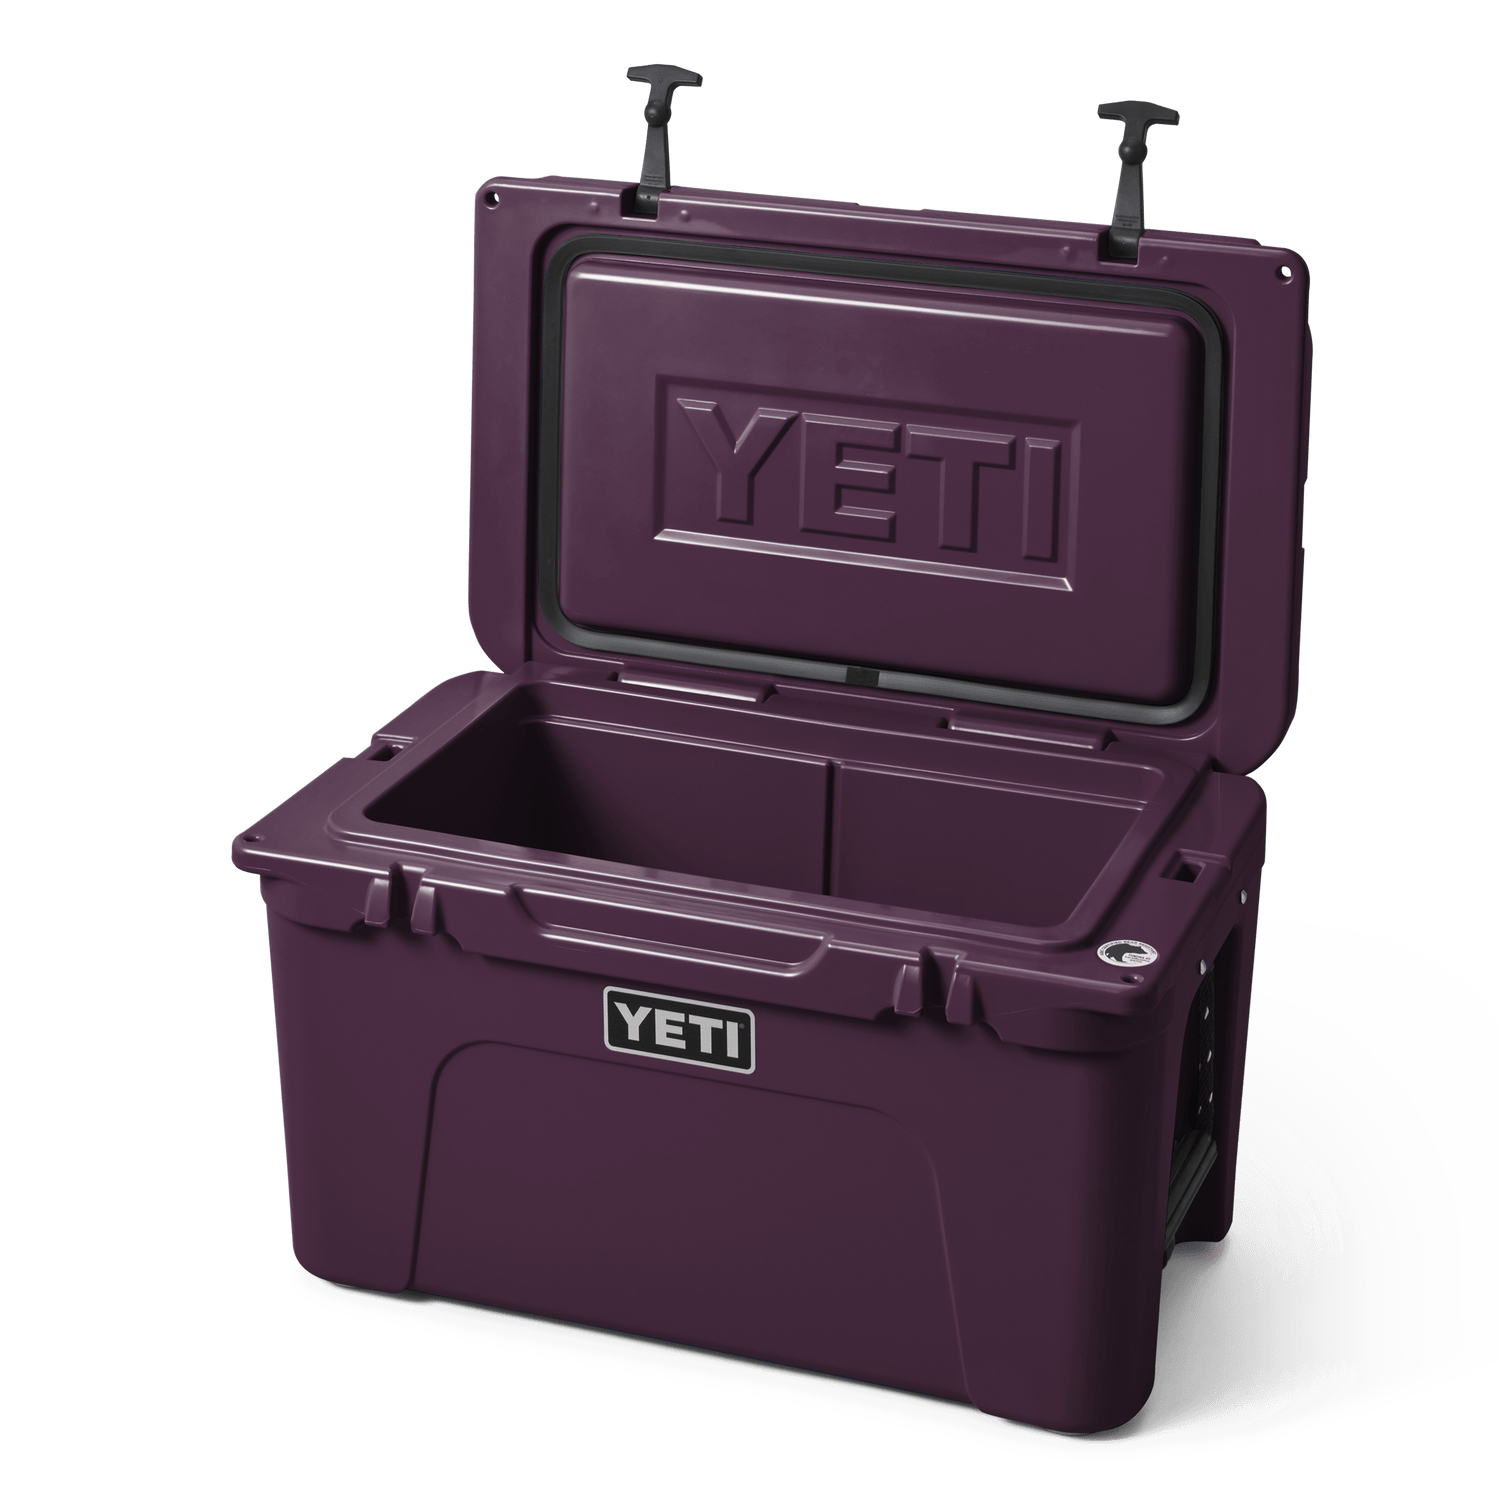 YETI TUNDRA 45 NORDIC Purple NEW LIMITED EDITION In Original Box